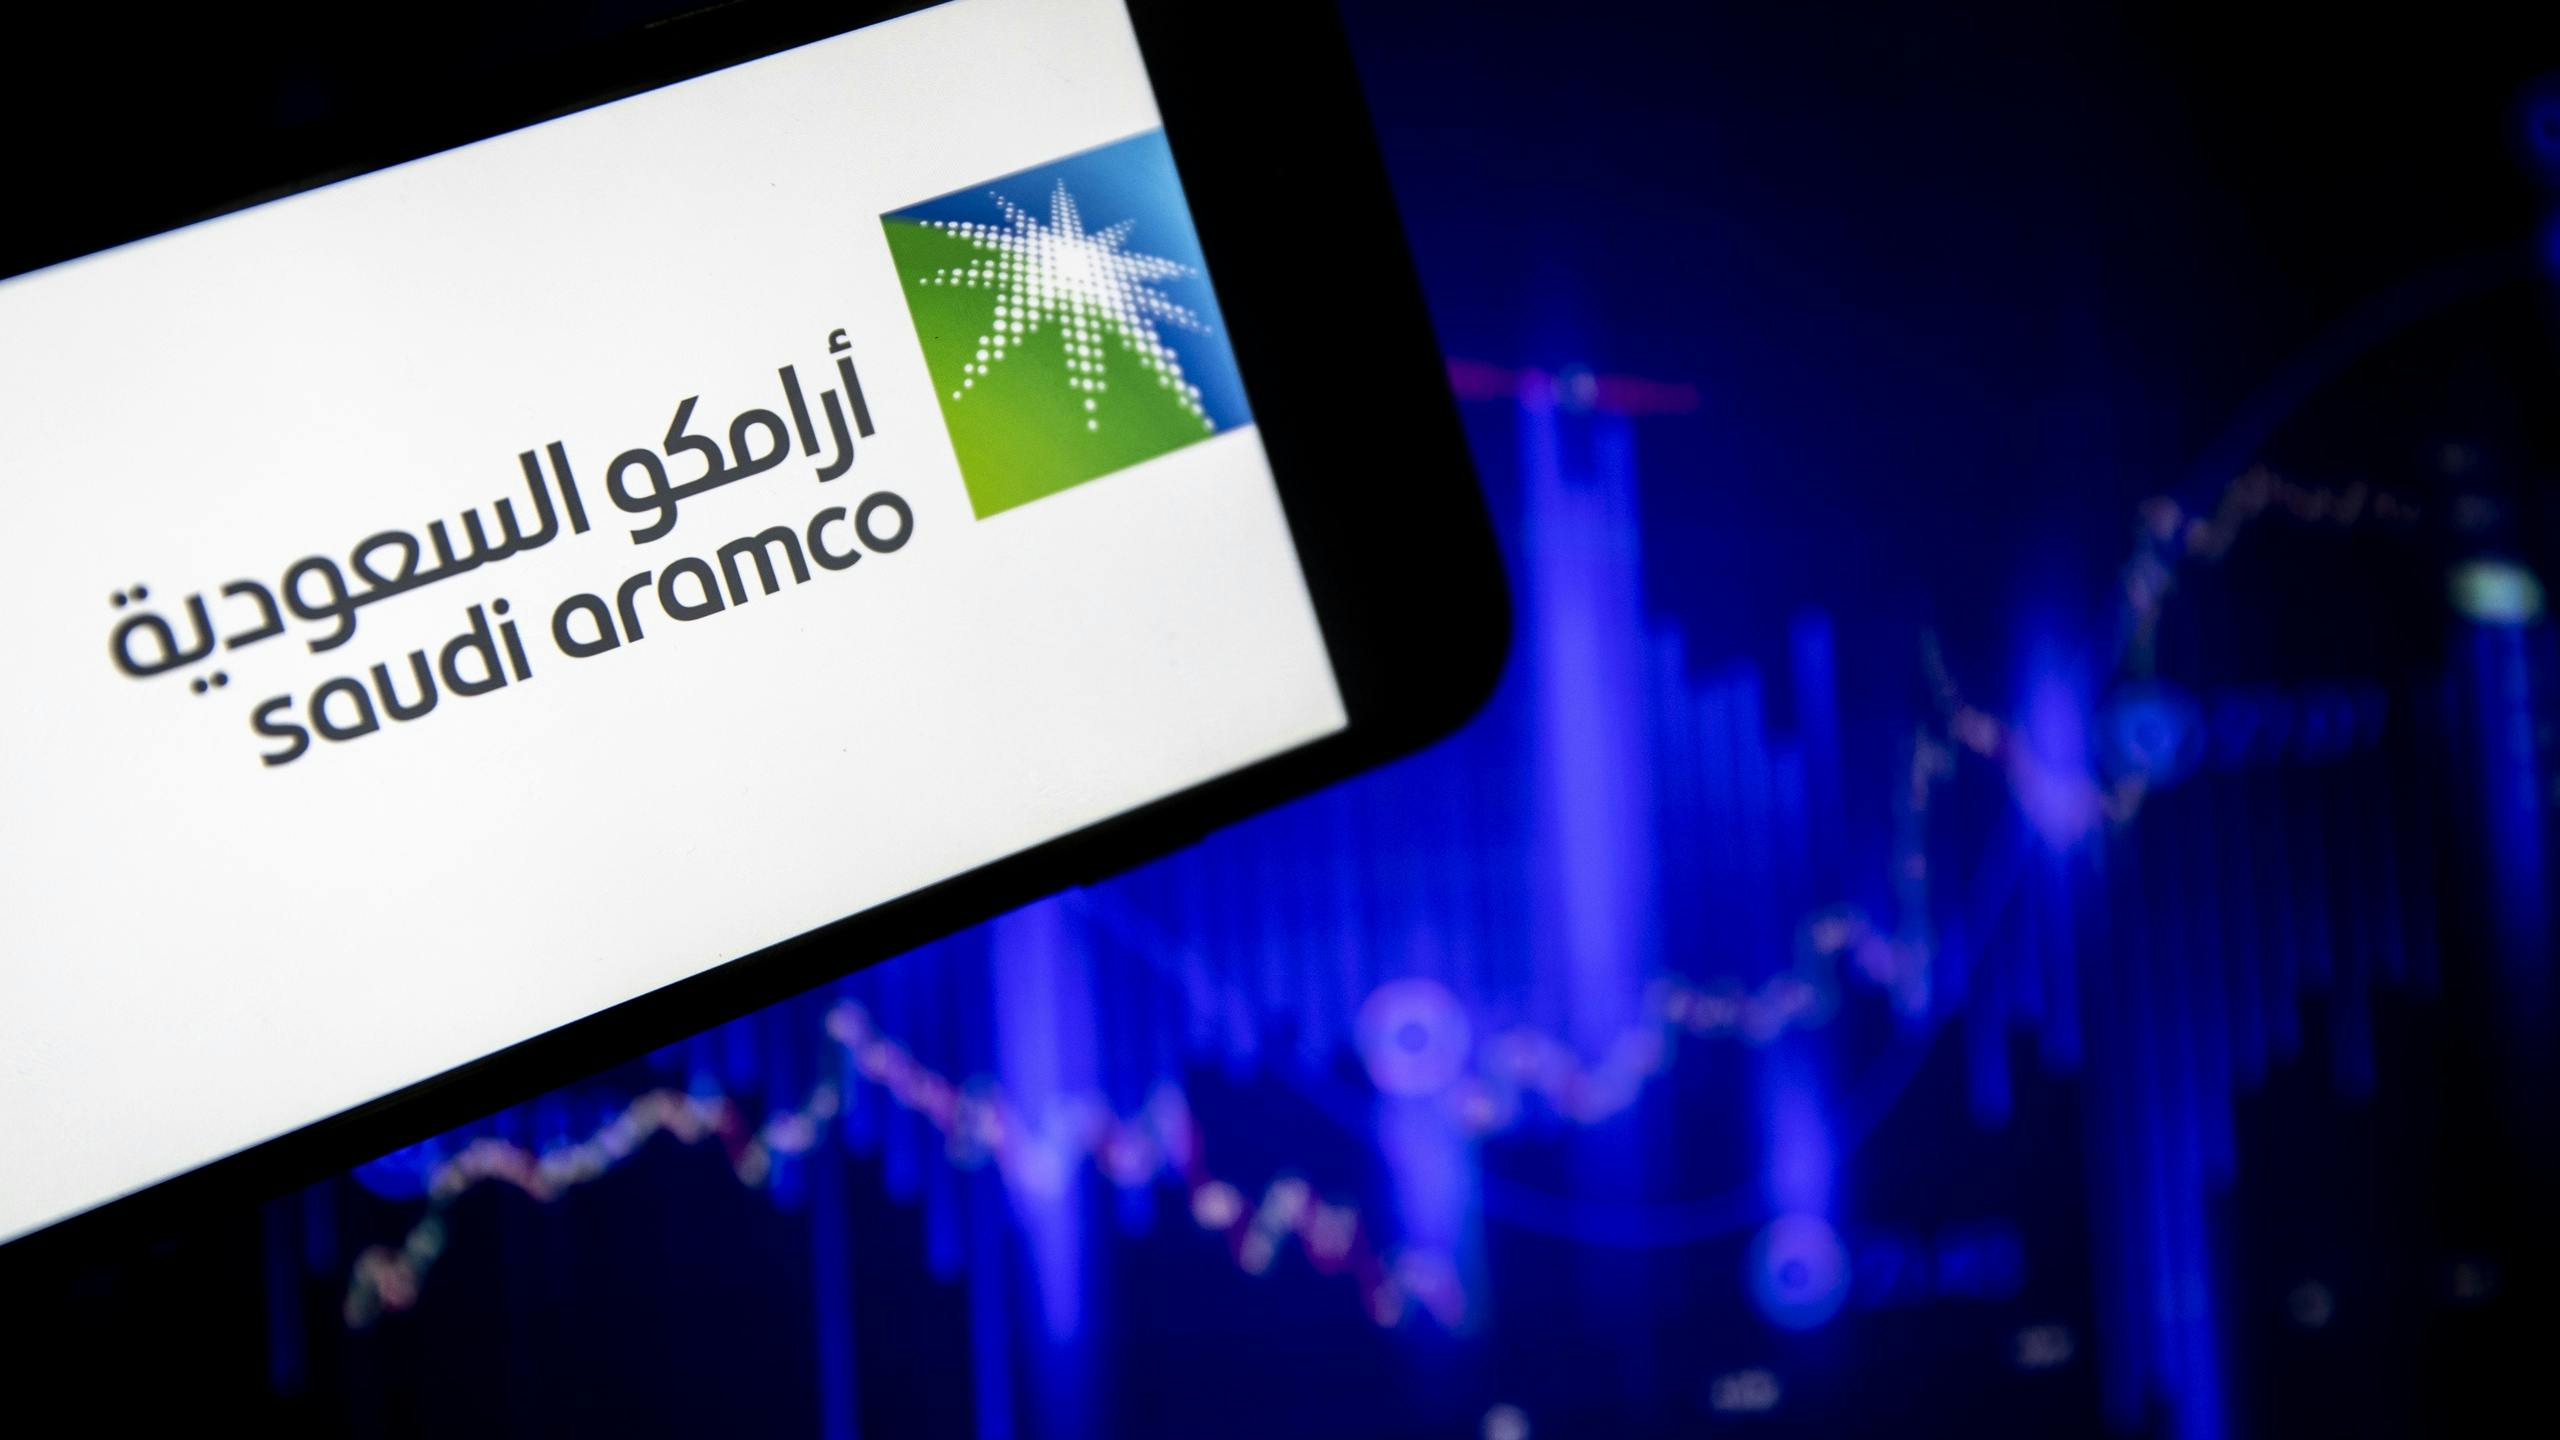 Hoge olieprijs levert Saudi Aramco forse winsten